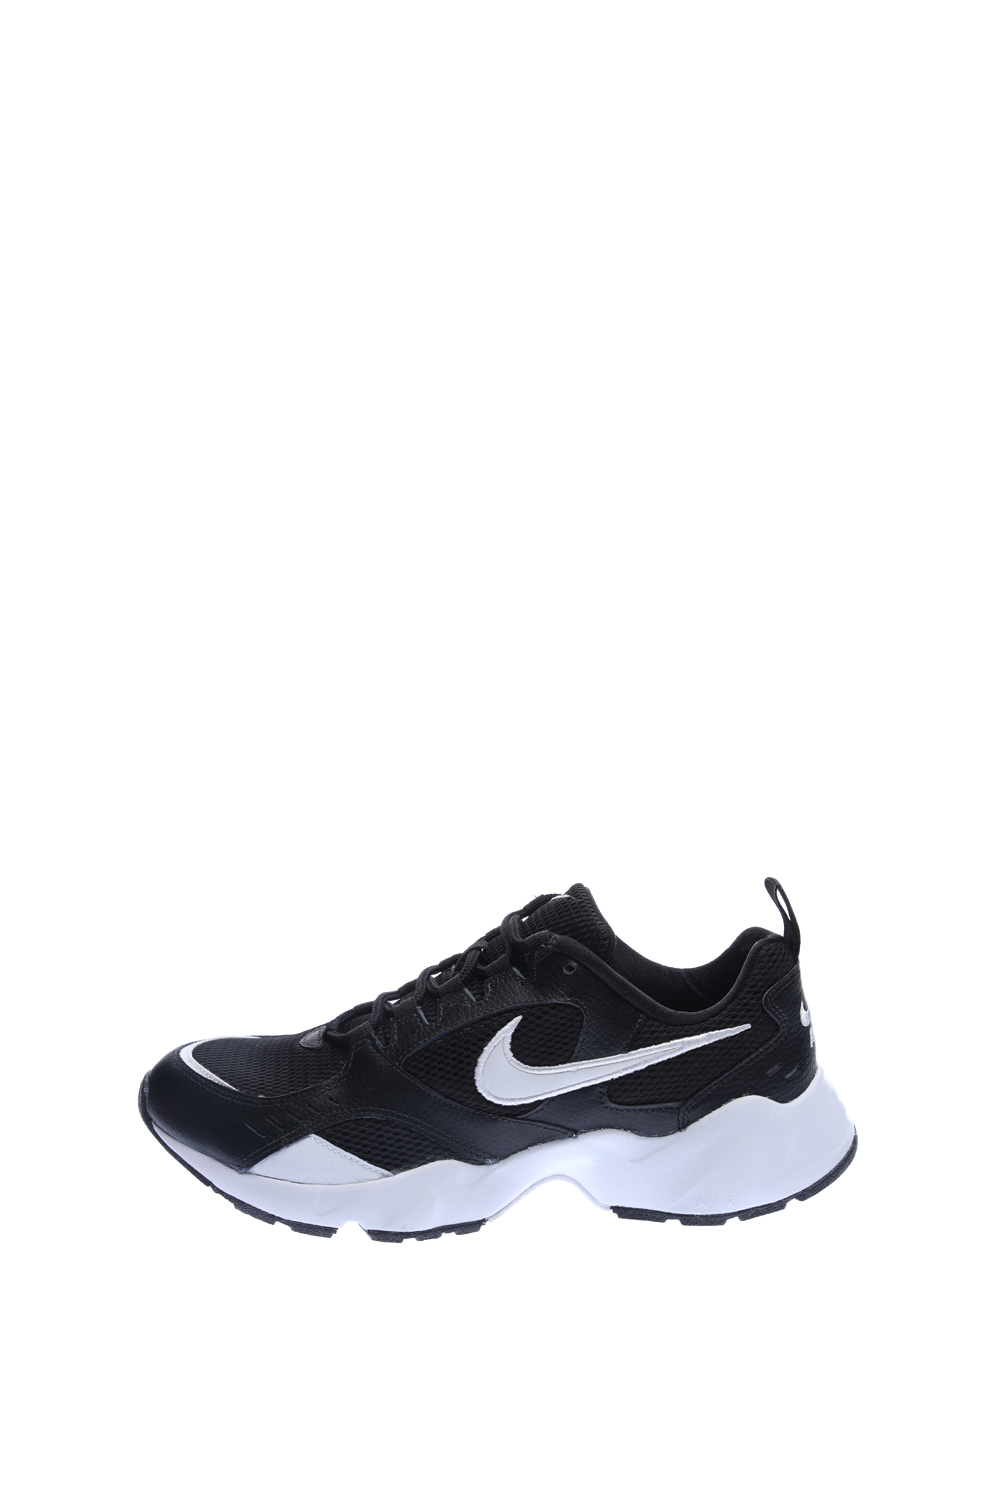 Ανδρικά/Παπούτσια/Αθλητικά/Running NIKE - Ανδρικά παπούτσια running NIKE AIR HEIGHTS μαύρα-λευκά